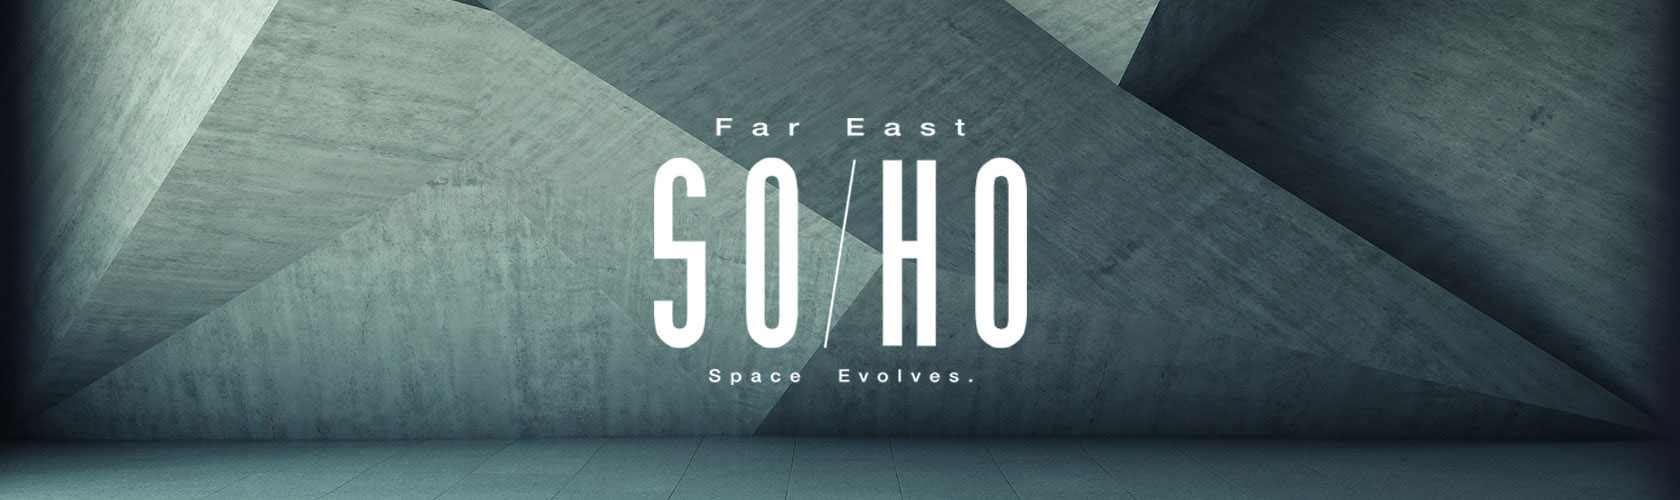 Far East SOHO Brand TVC